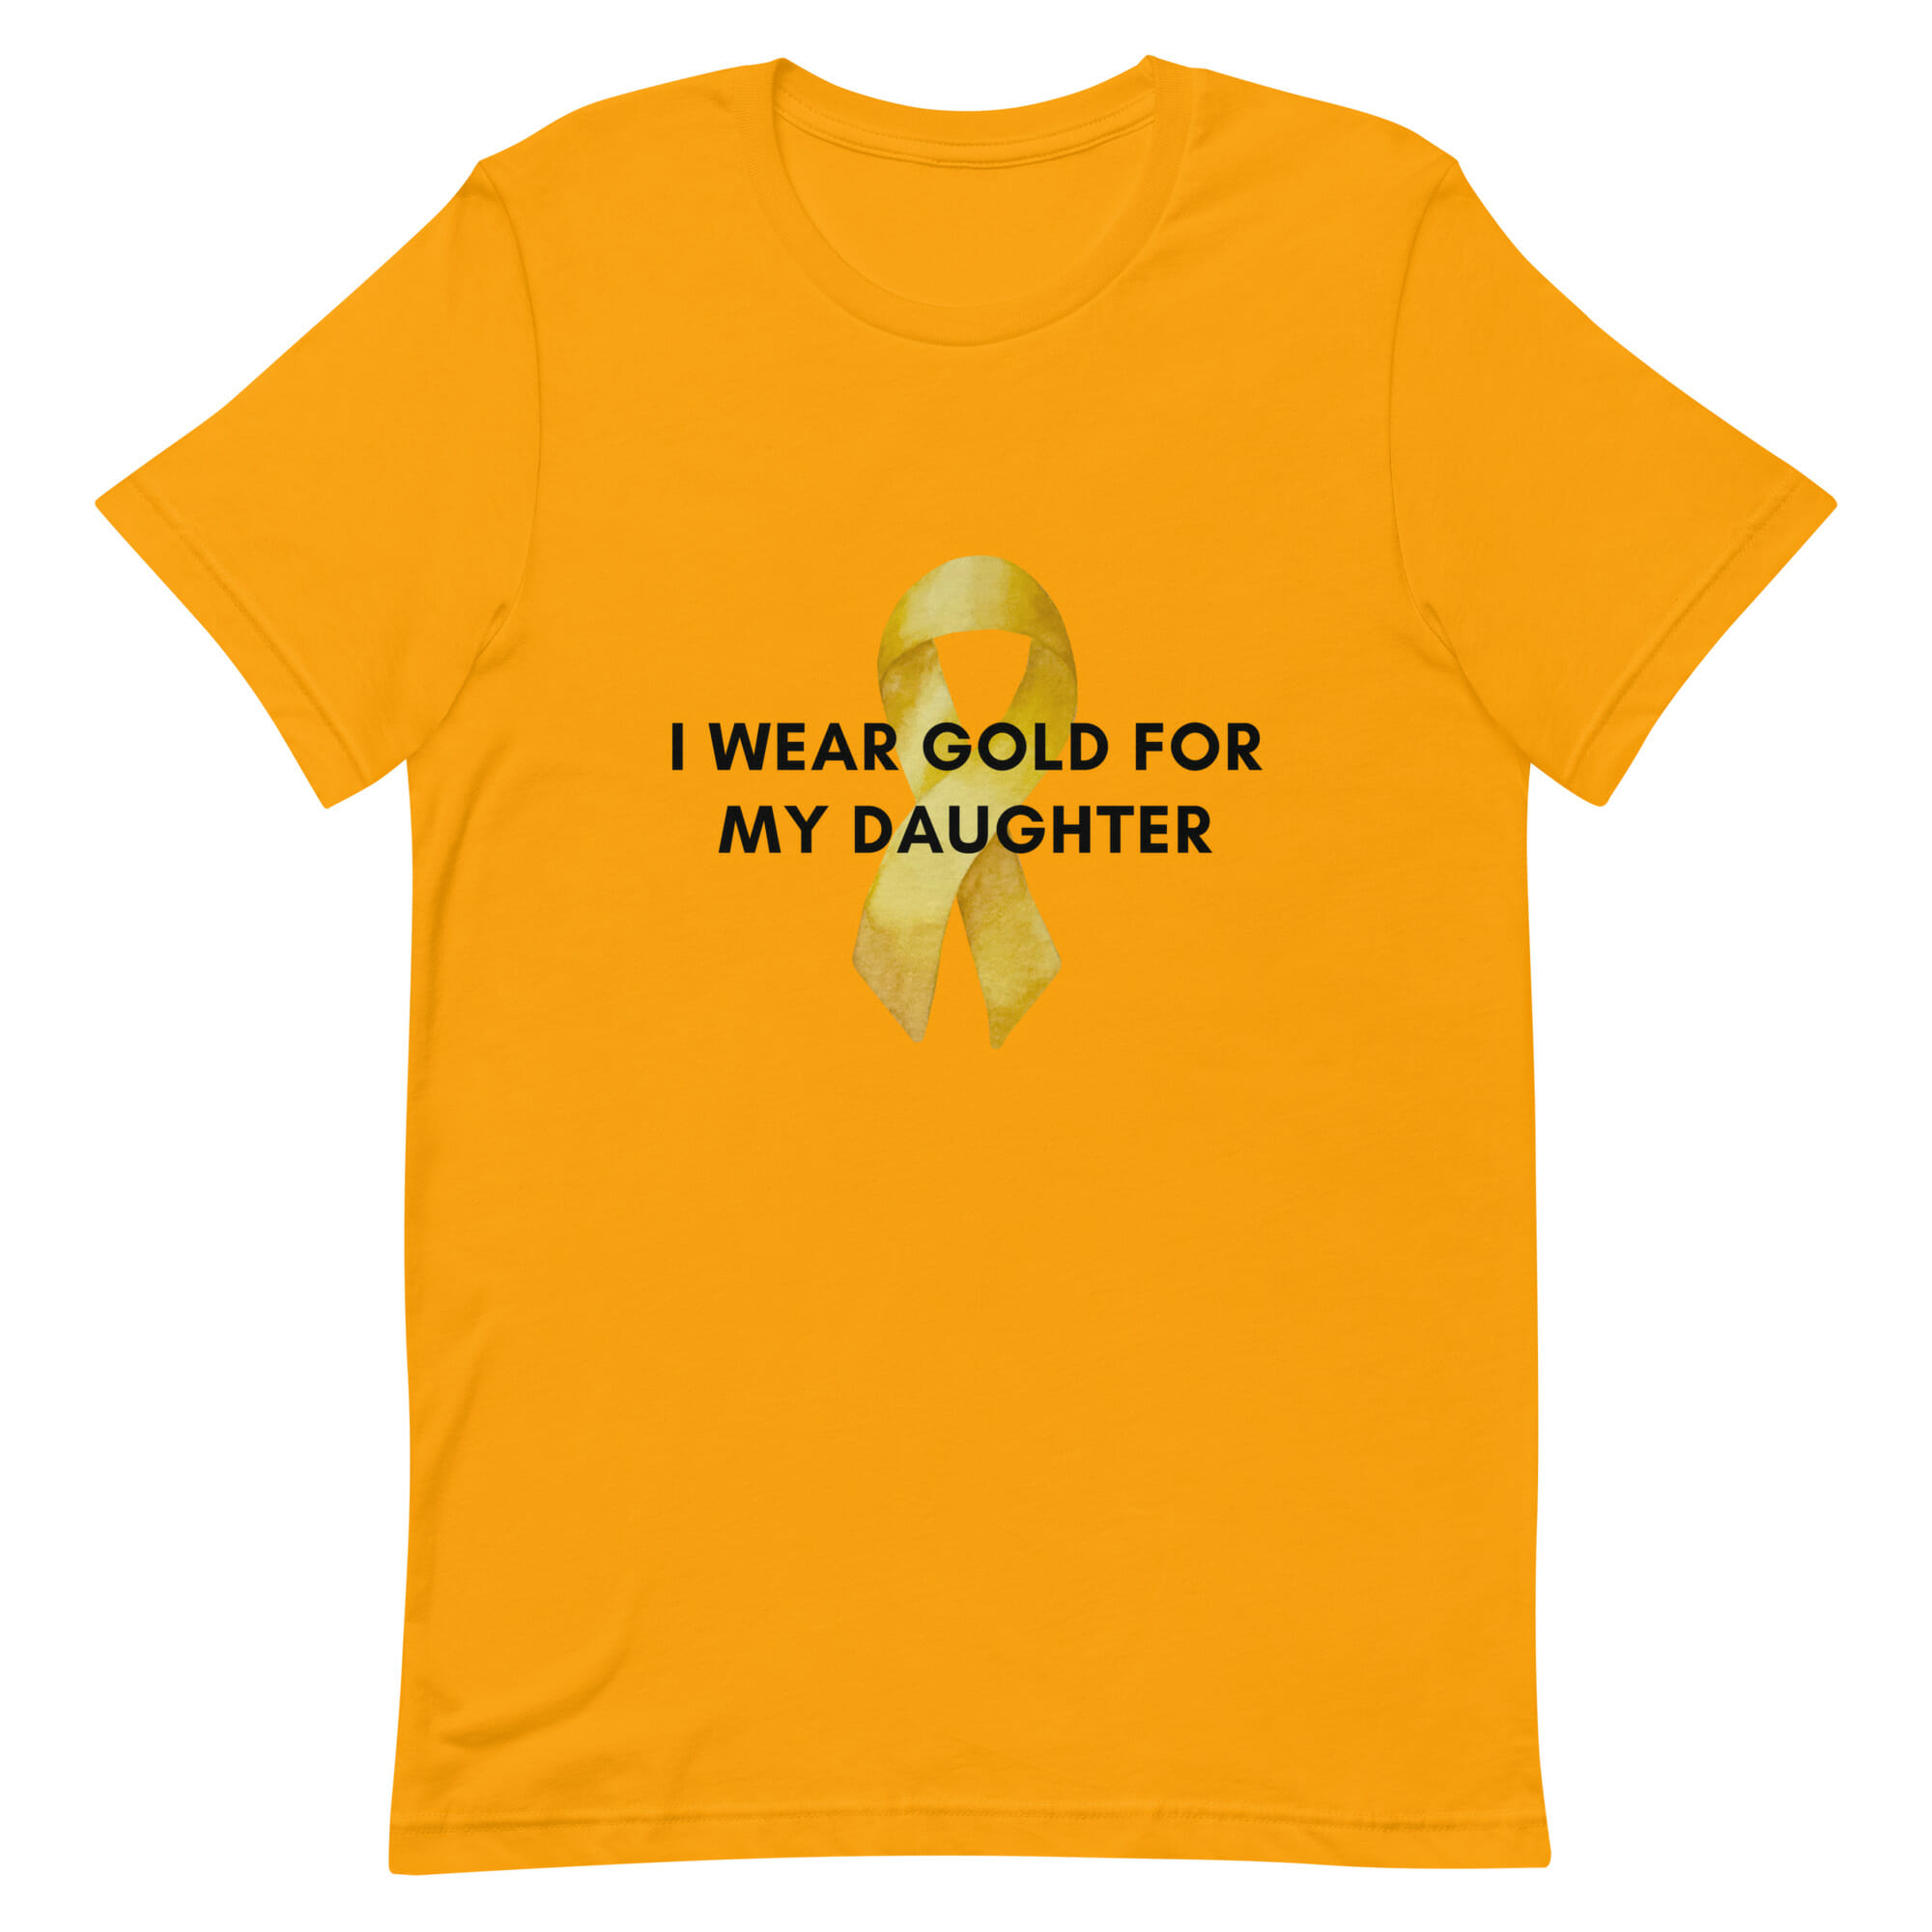 unisex-staple-t-shirt-gold-front-63e5458b91d14.jpg